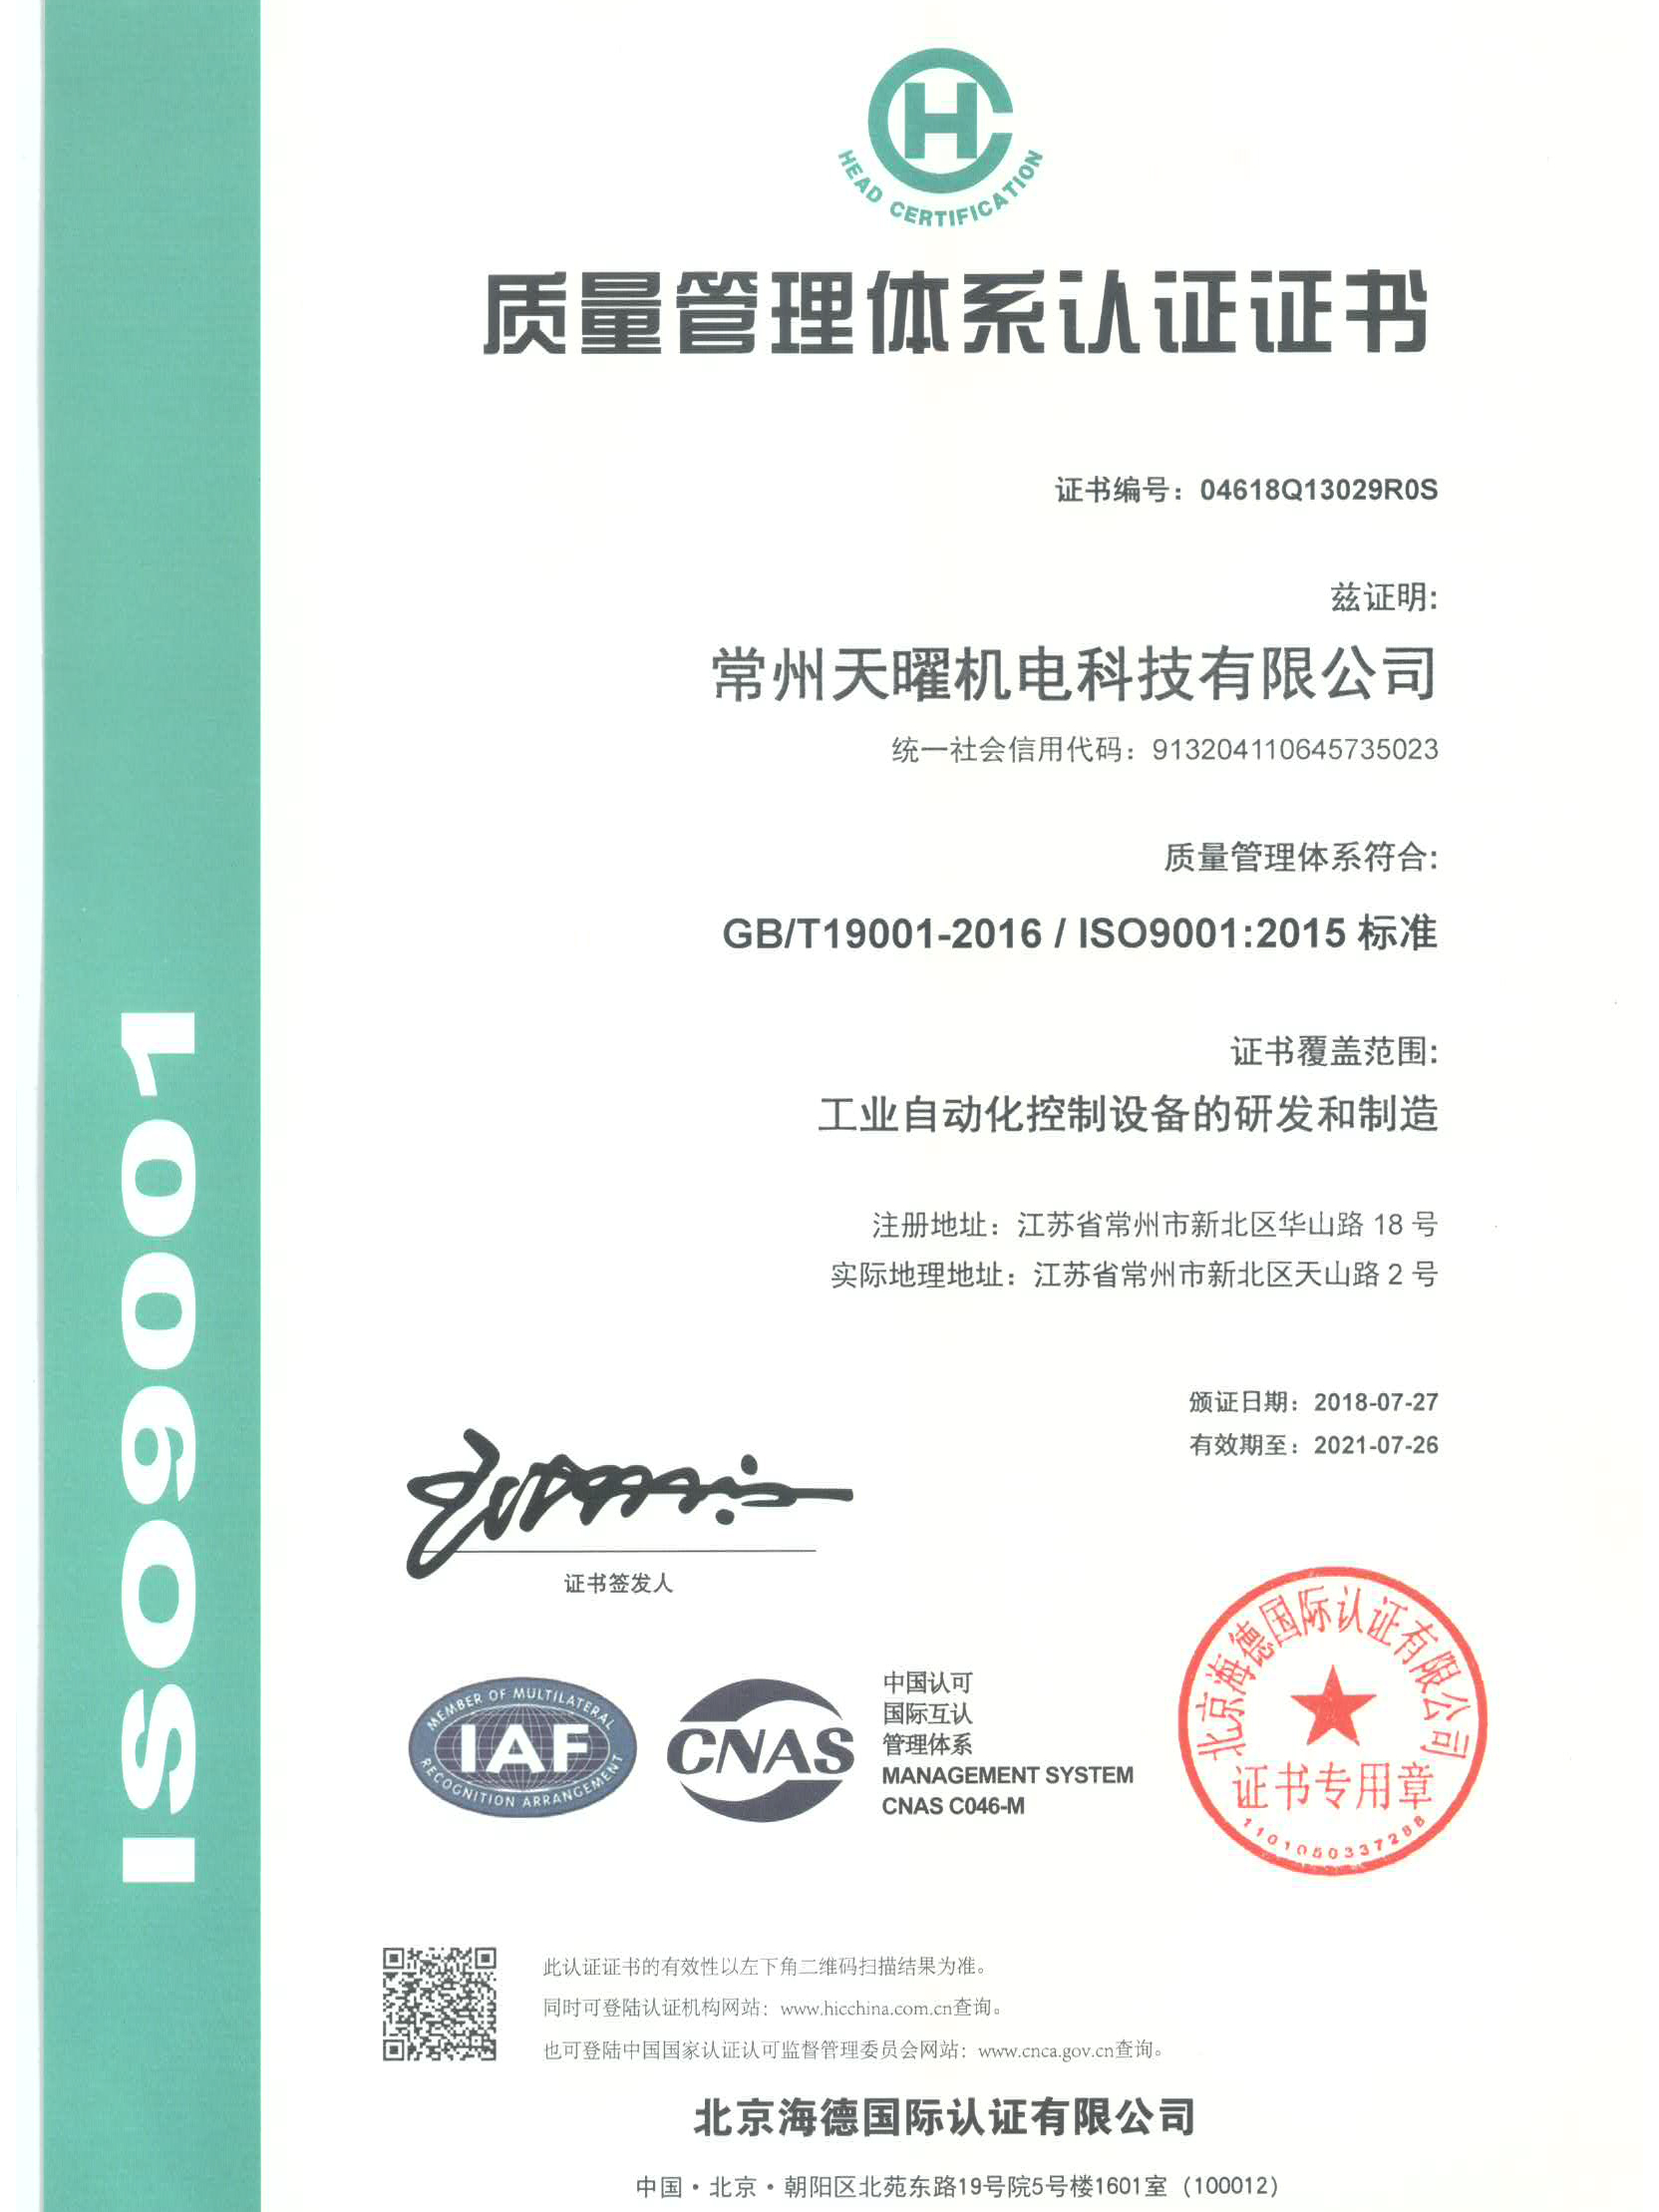 凤凰联盟的ISO9001的证书